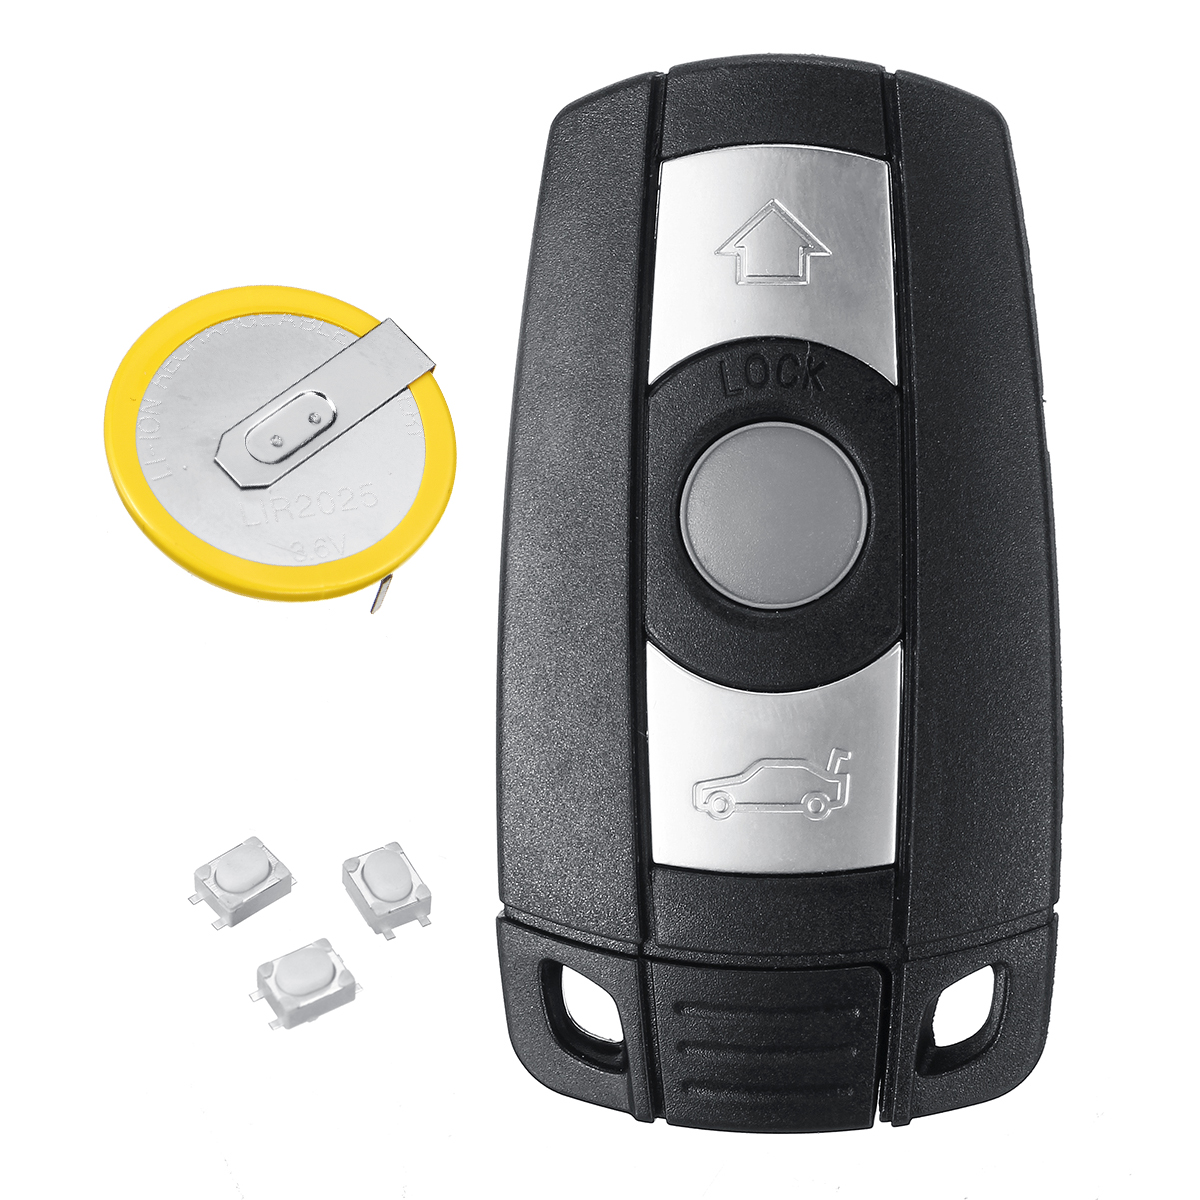 3 Buttons Remote Key Fob with LIR2025 Battery for BMW 323 325 328 335I E90 E92 E93